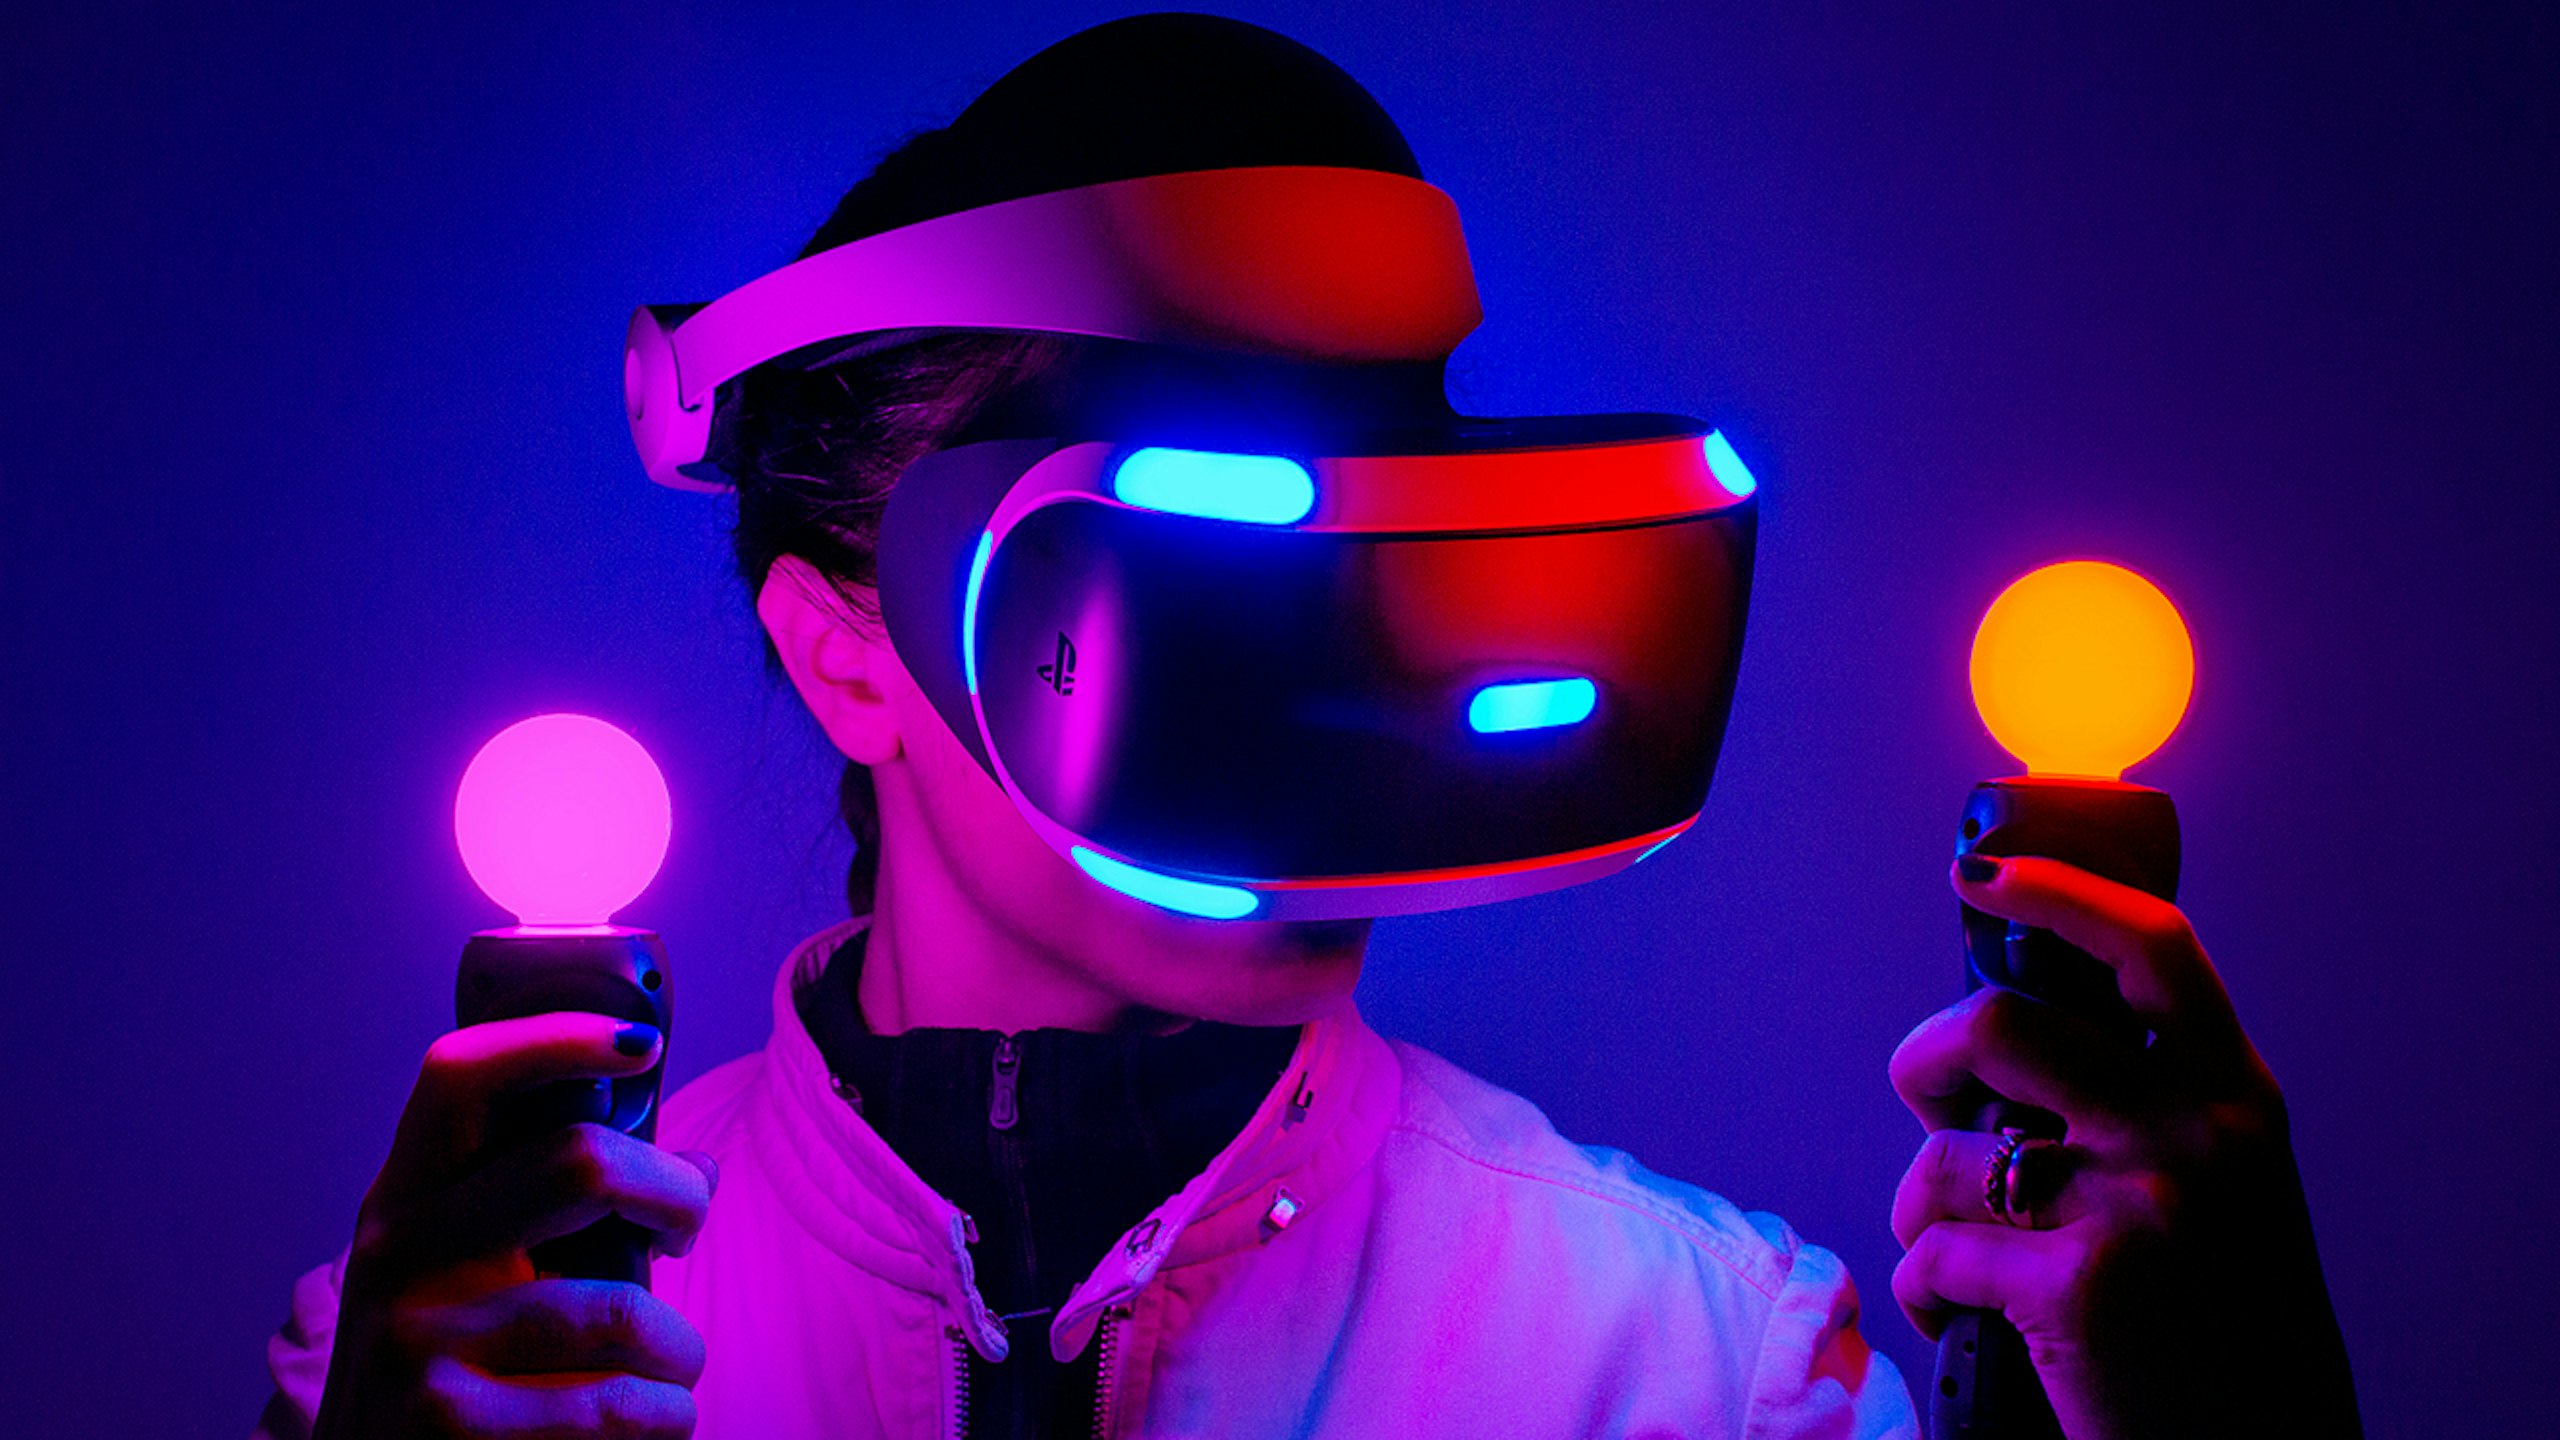 Виар очки поиграть. Сони плейстейшен vr2. PLAYSTATION VR. Шлем виртуальной реальности Sony PLAYSTATION vr2. VR очки Neon.